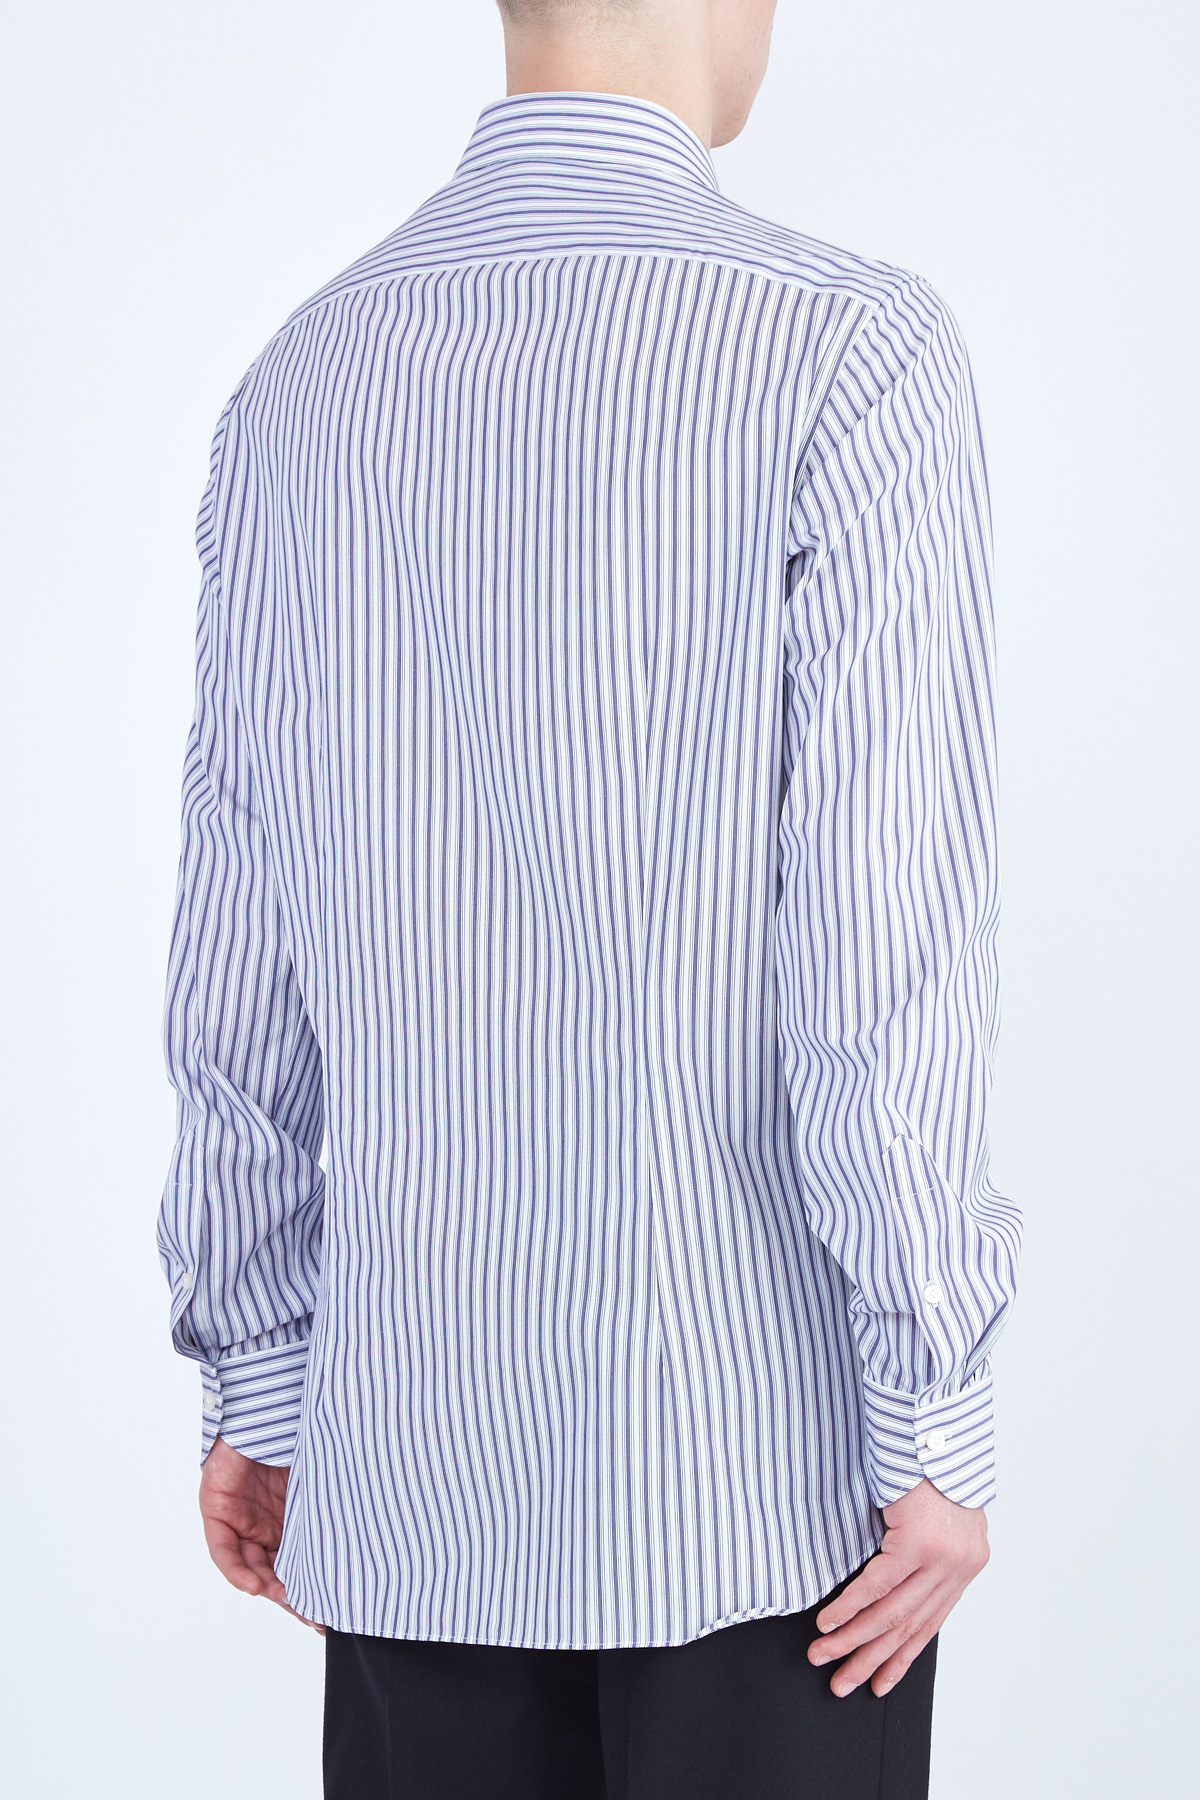 Рубашка в полоску из фирменного экстрамягкого хлопка Supercotone XACUS, цвет синий, размер 50;54;56;52;52 - фото 4